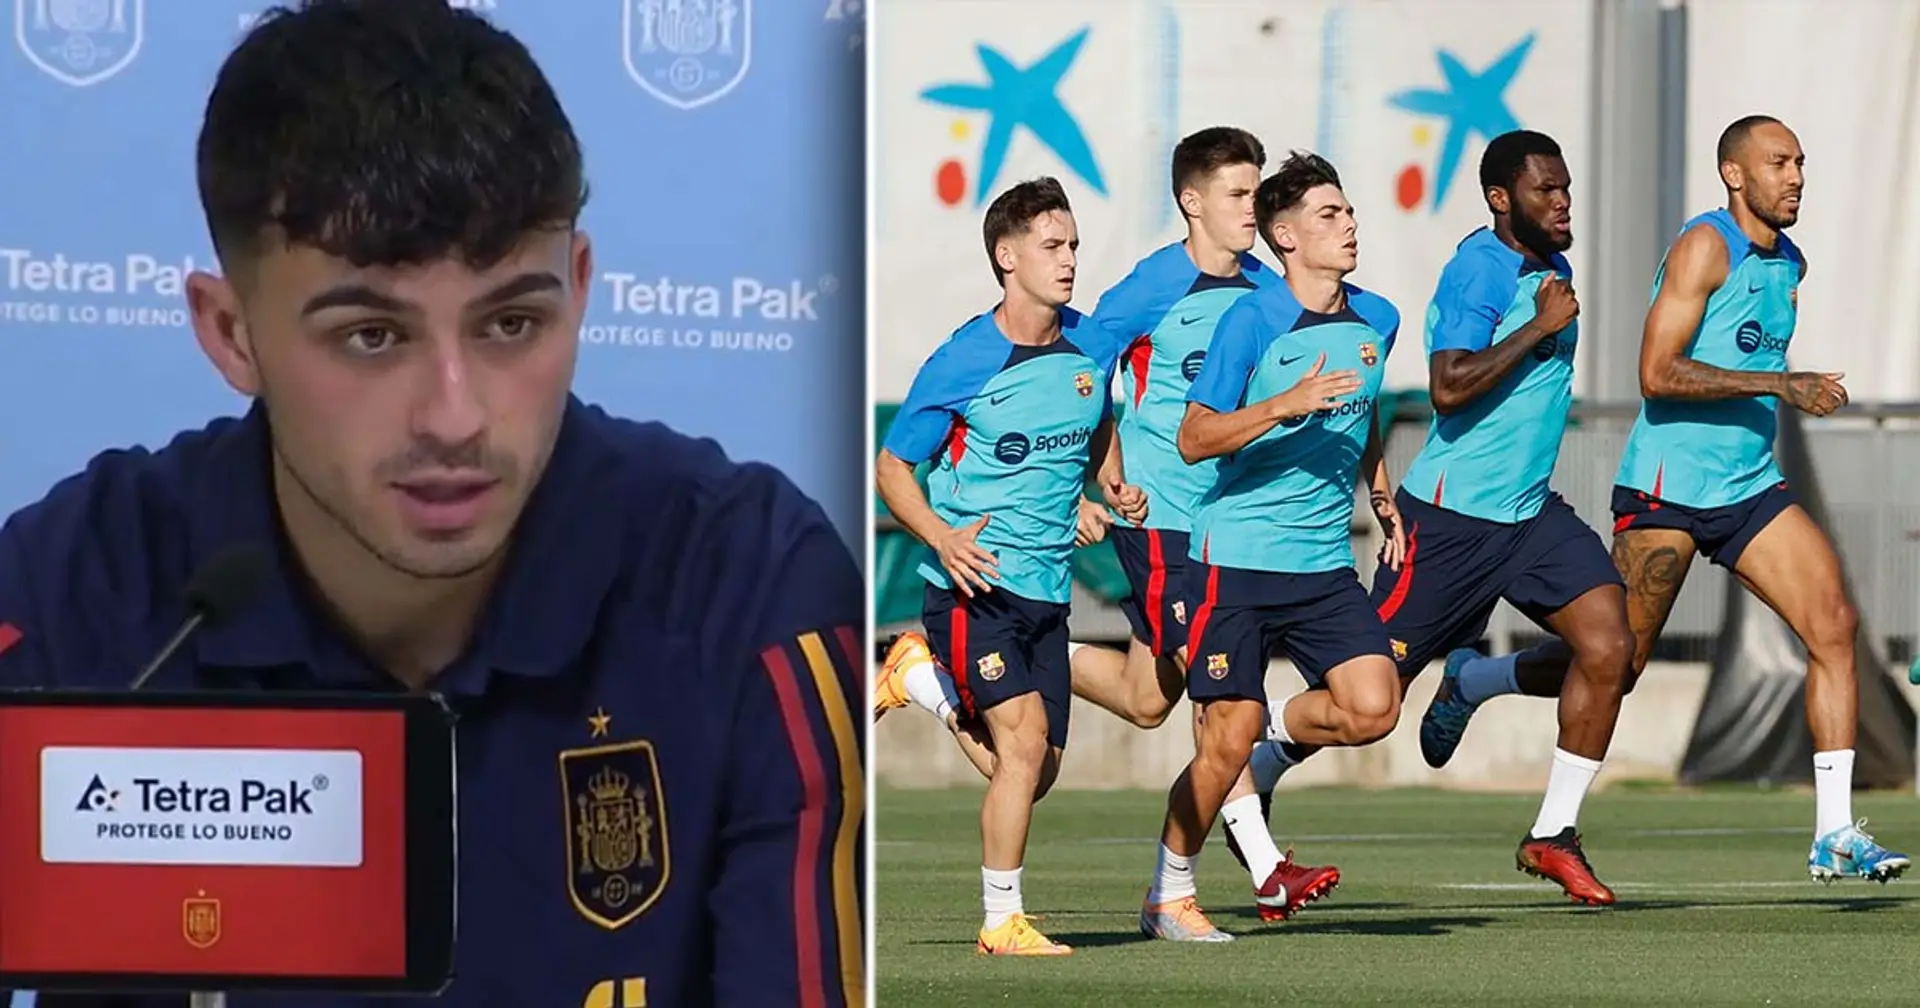 Pedri nennt einen Barça-Spieler, der andere nach einem Zusammenstoß mit ihm "3 Meter weit wegfliegen" lässt